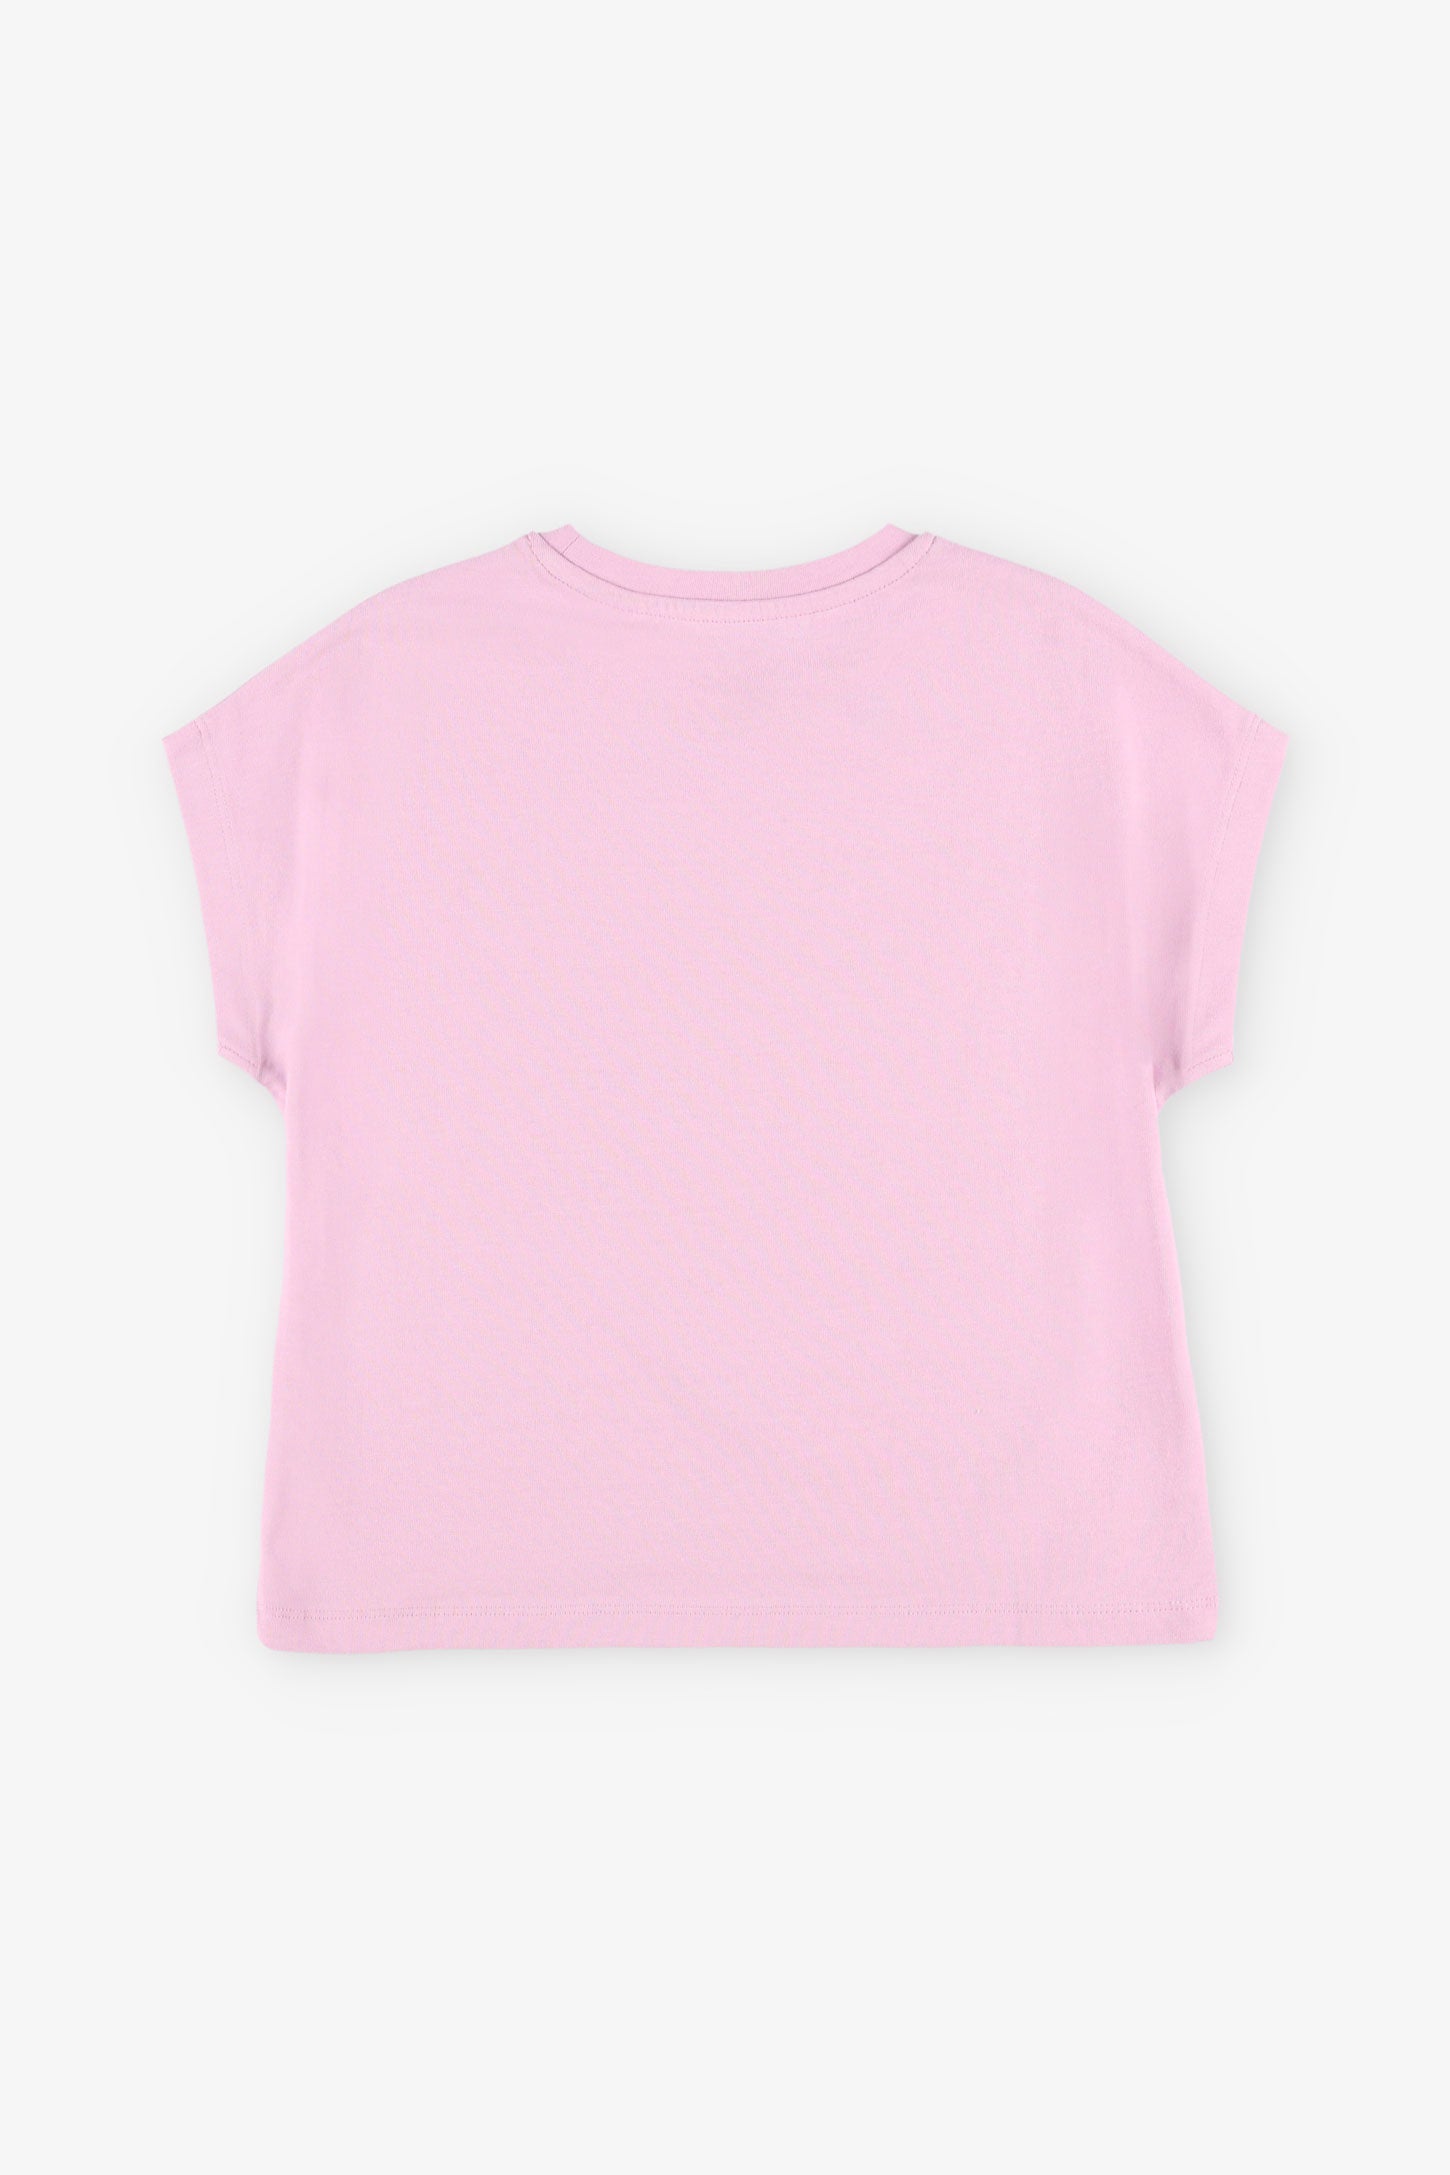 T-shirt col rond imprimé en coton, 2/20$ - Enfant fille && MAUVE